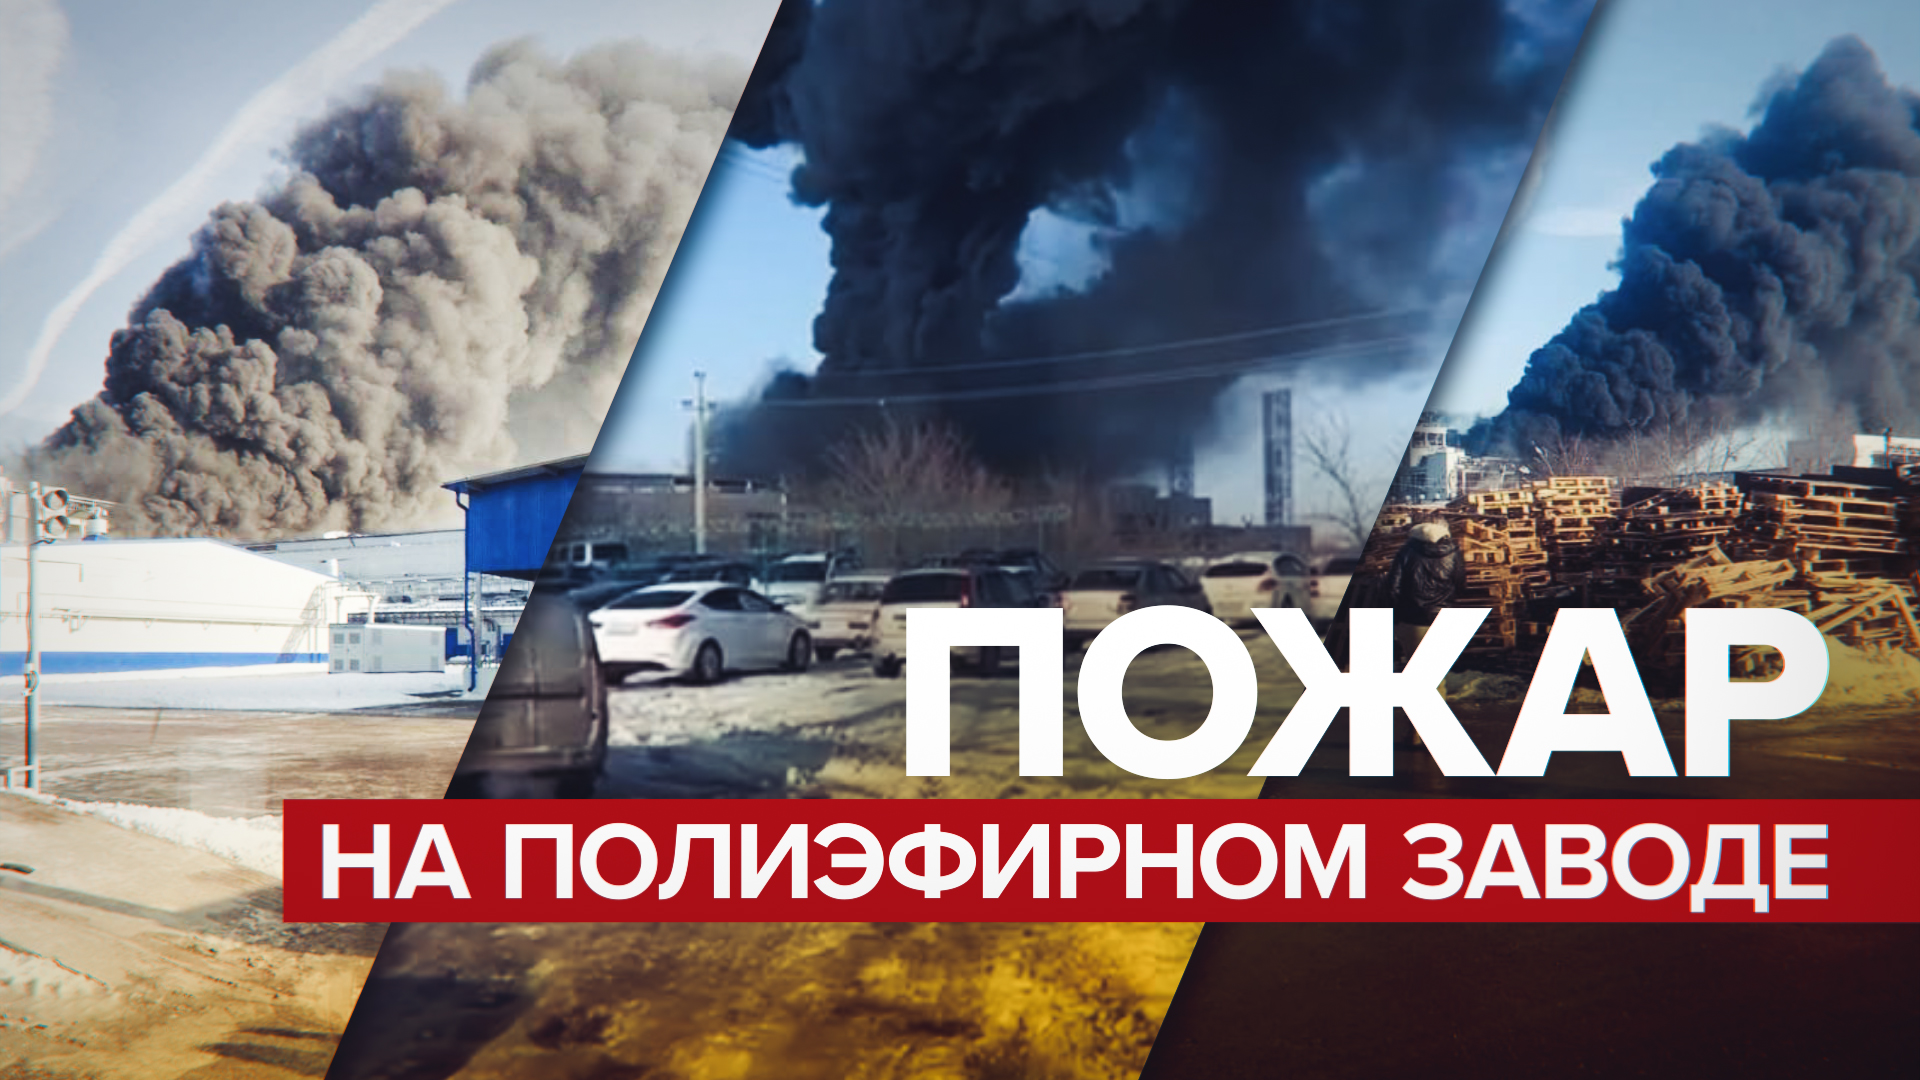 В Ростовской области произошёл пожар на полиэфирном заводе — видео